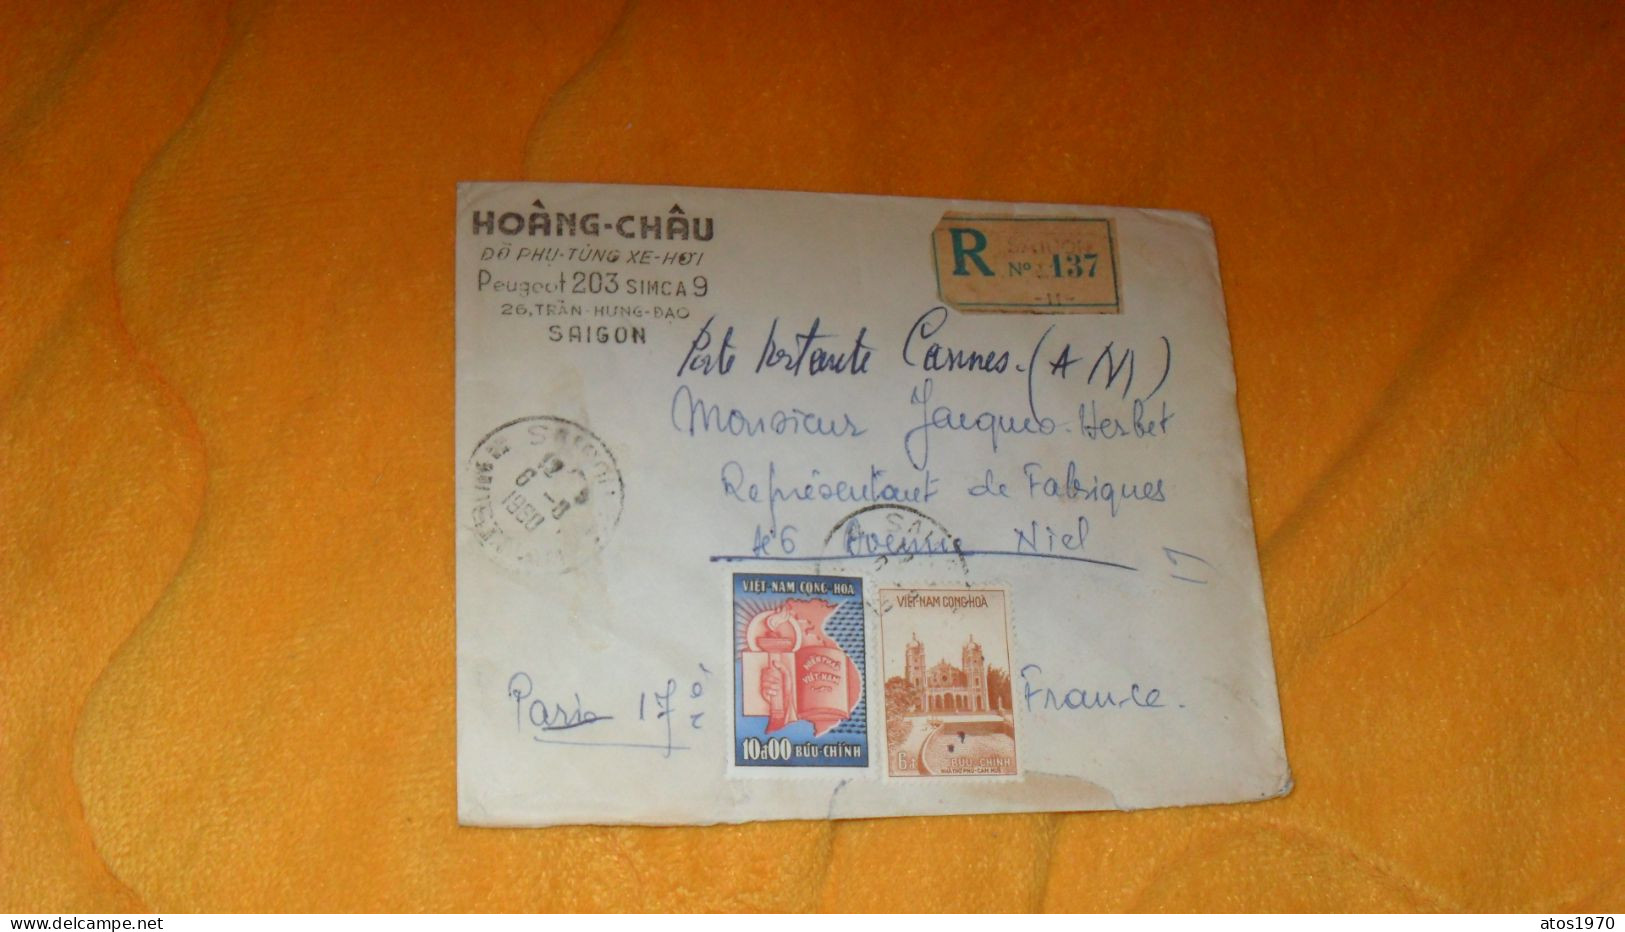 ENVELOPPE ANCIENNE DE 1960../ HOANG-CHAU PEUGEOT 203 SIMCA 9 SAIGON POUR PARIS..R N°137 SAIGON 11 CACHETS + TIMBRES X2 - Viêt-Nam